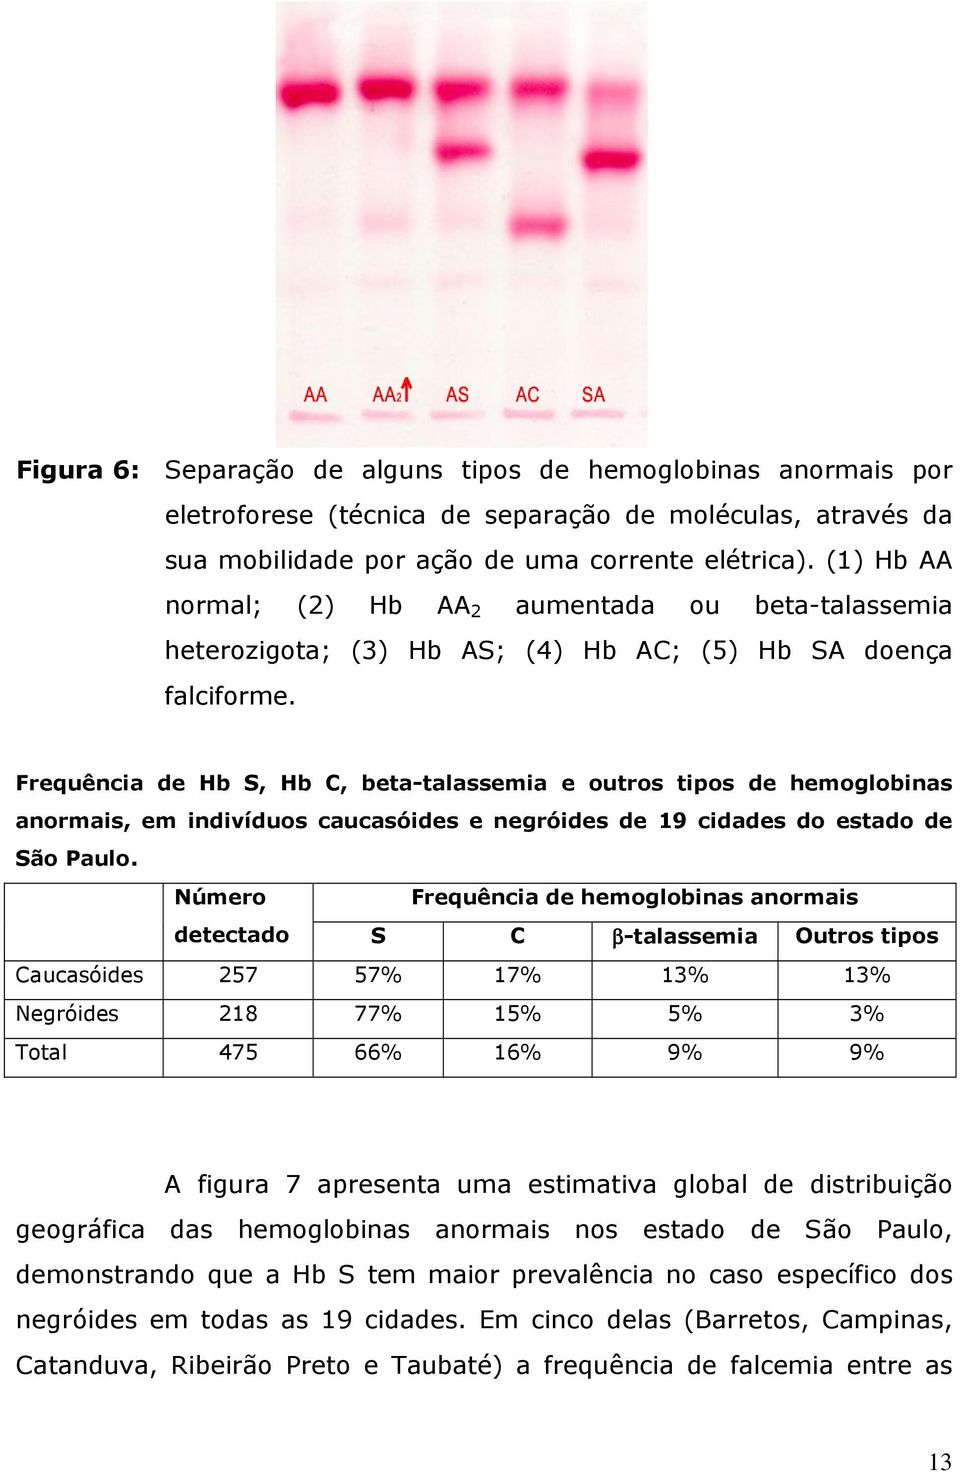 Frequência de Hb S, Hb C, beta-talassemia e outros tipos de hemoglobinas anormais, em indivíduos caucasóides e negróides de 19 cidades do estado de São Paulo.